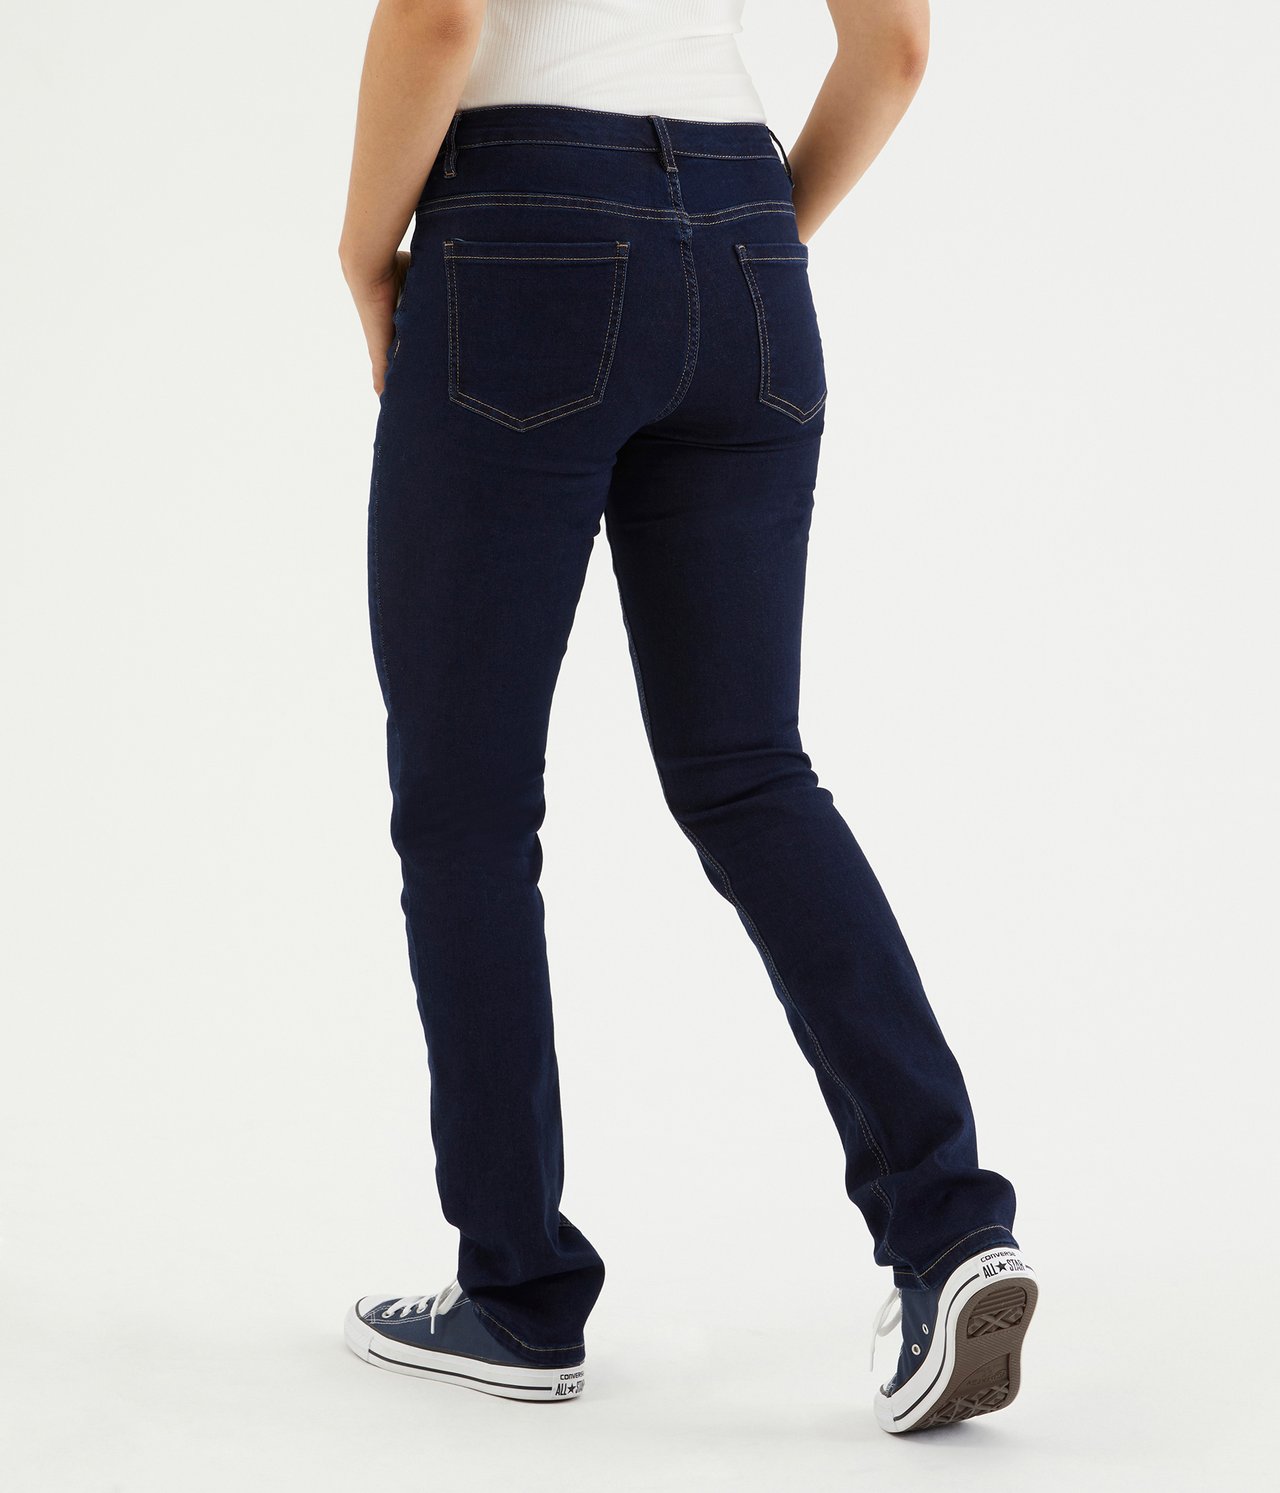 Alice straight jeans extra long leg - Tumma denimi - 4